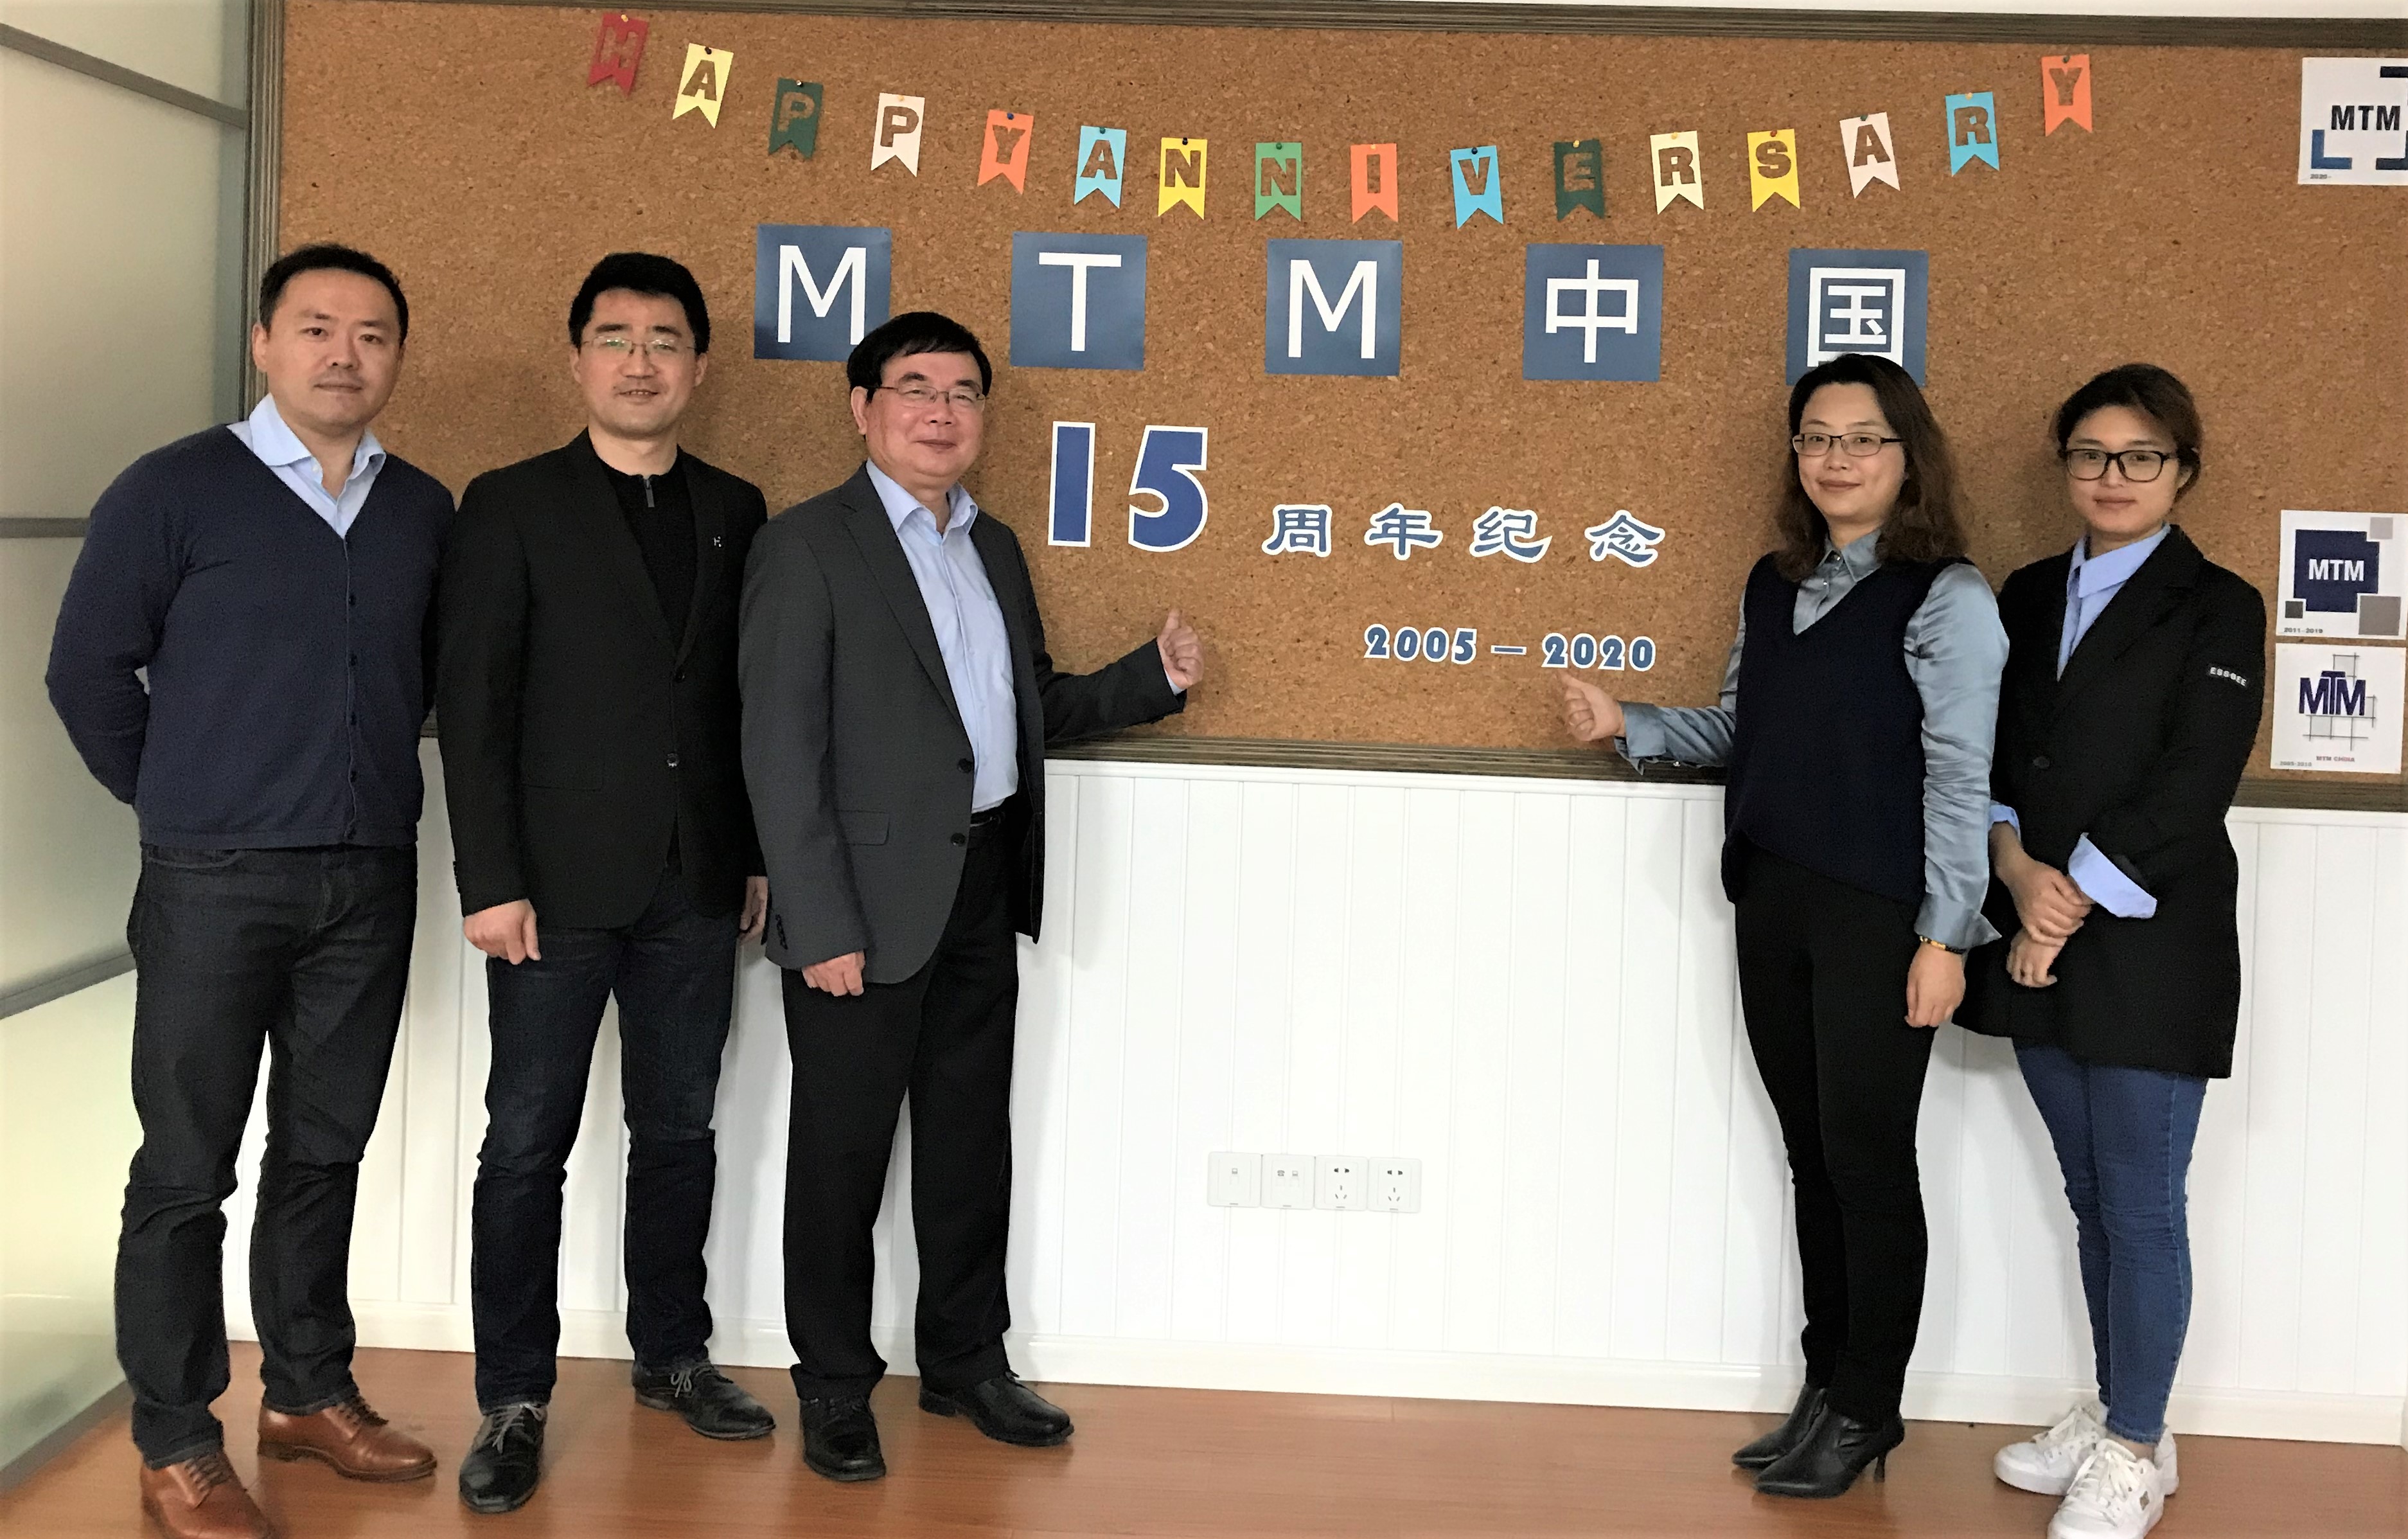 Team MTM China feiert 15. Firmenjubiläum